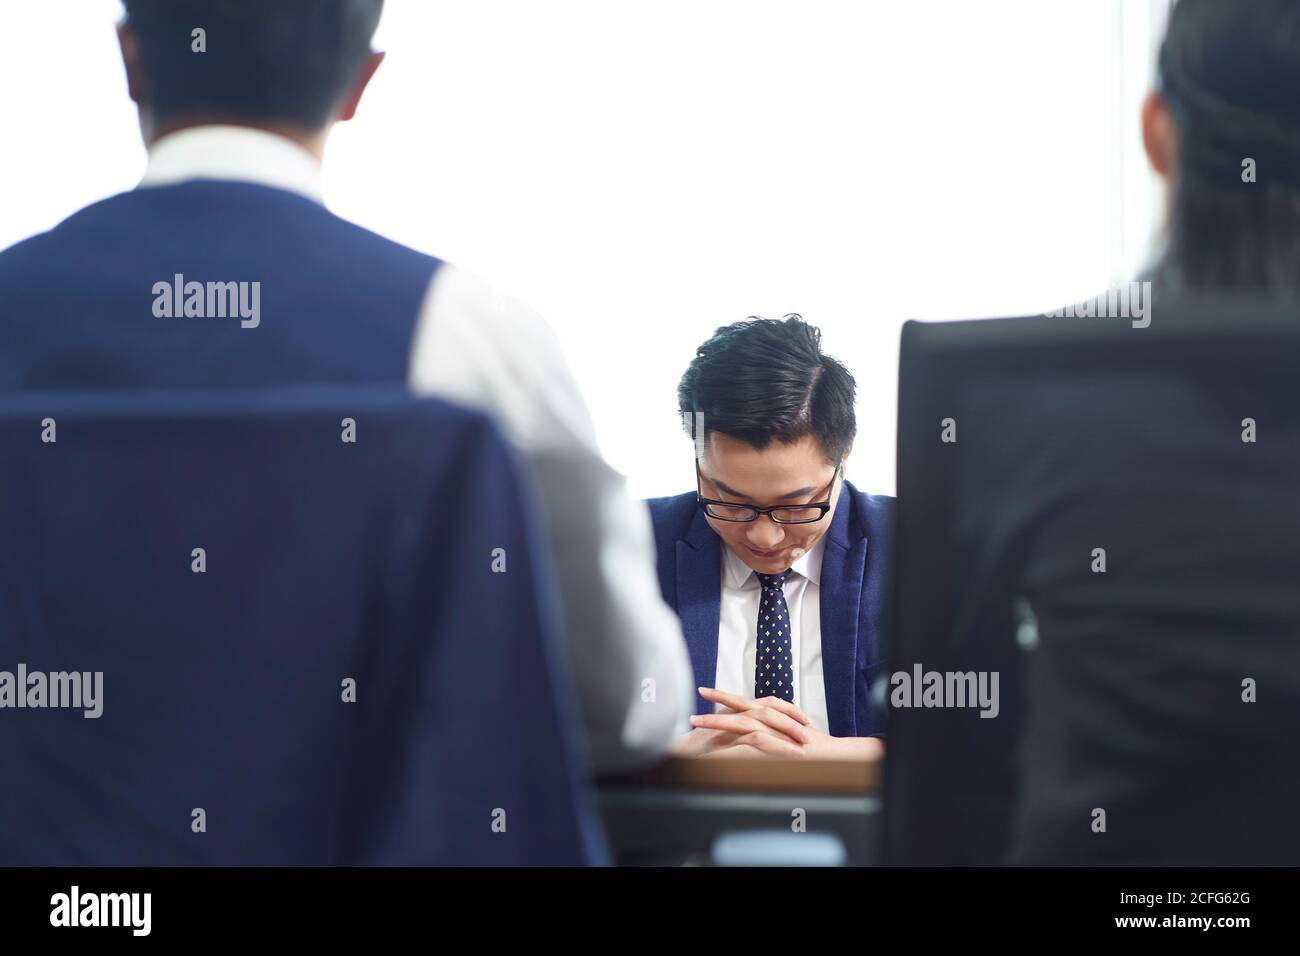 joven hombre de negocios asiático que se ve triste después de aprender la terminación de empleo Foto de stock